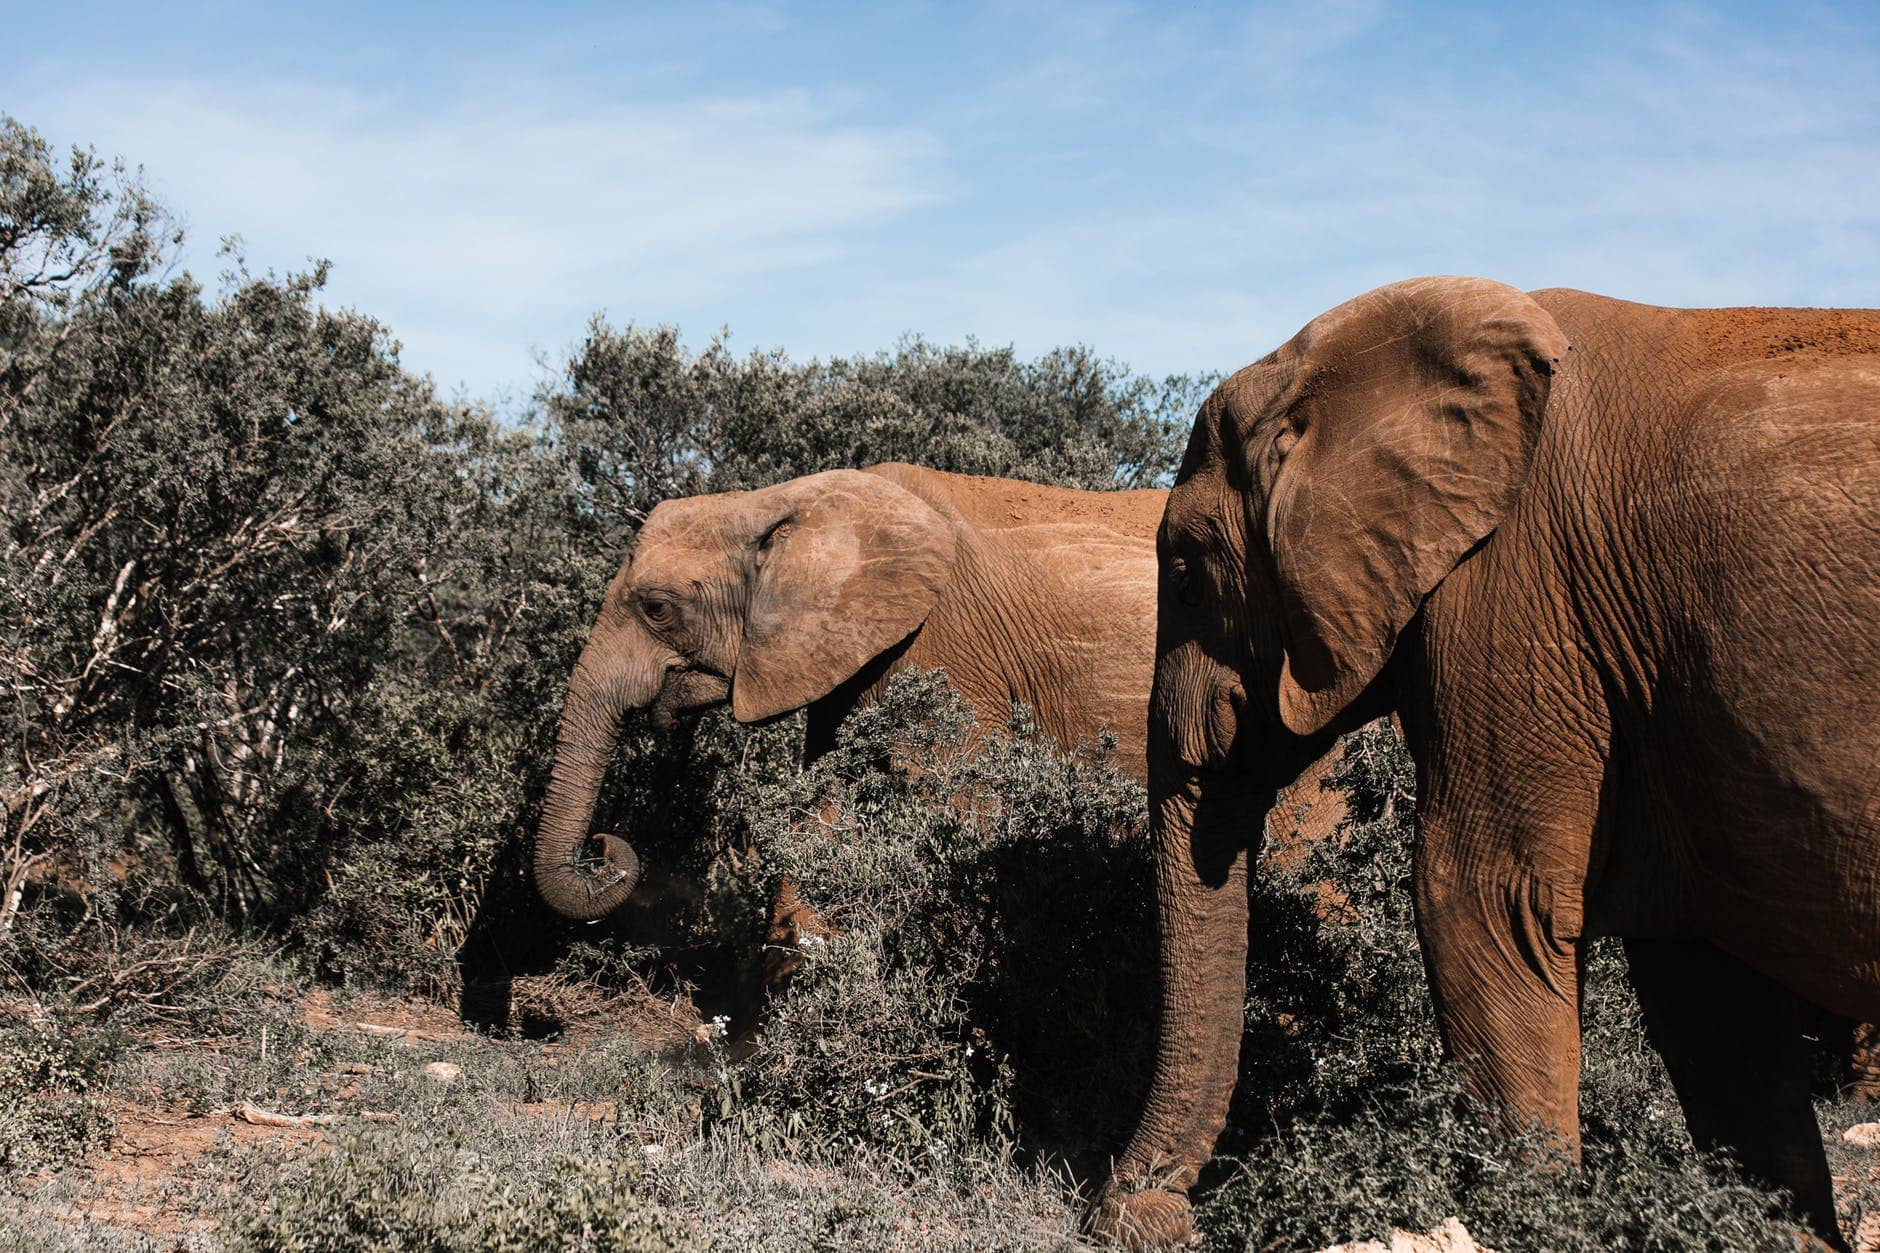 elephants pasturing among dry bushes on sunny day